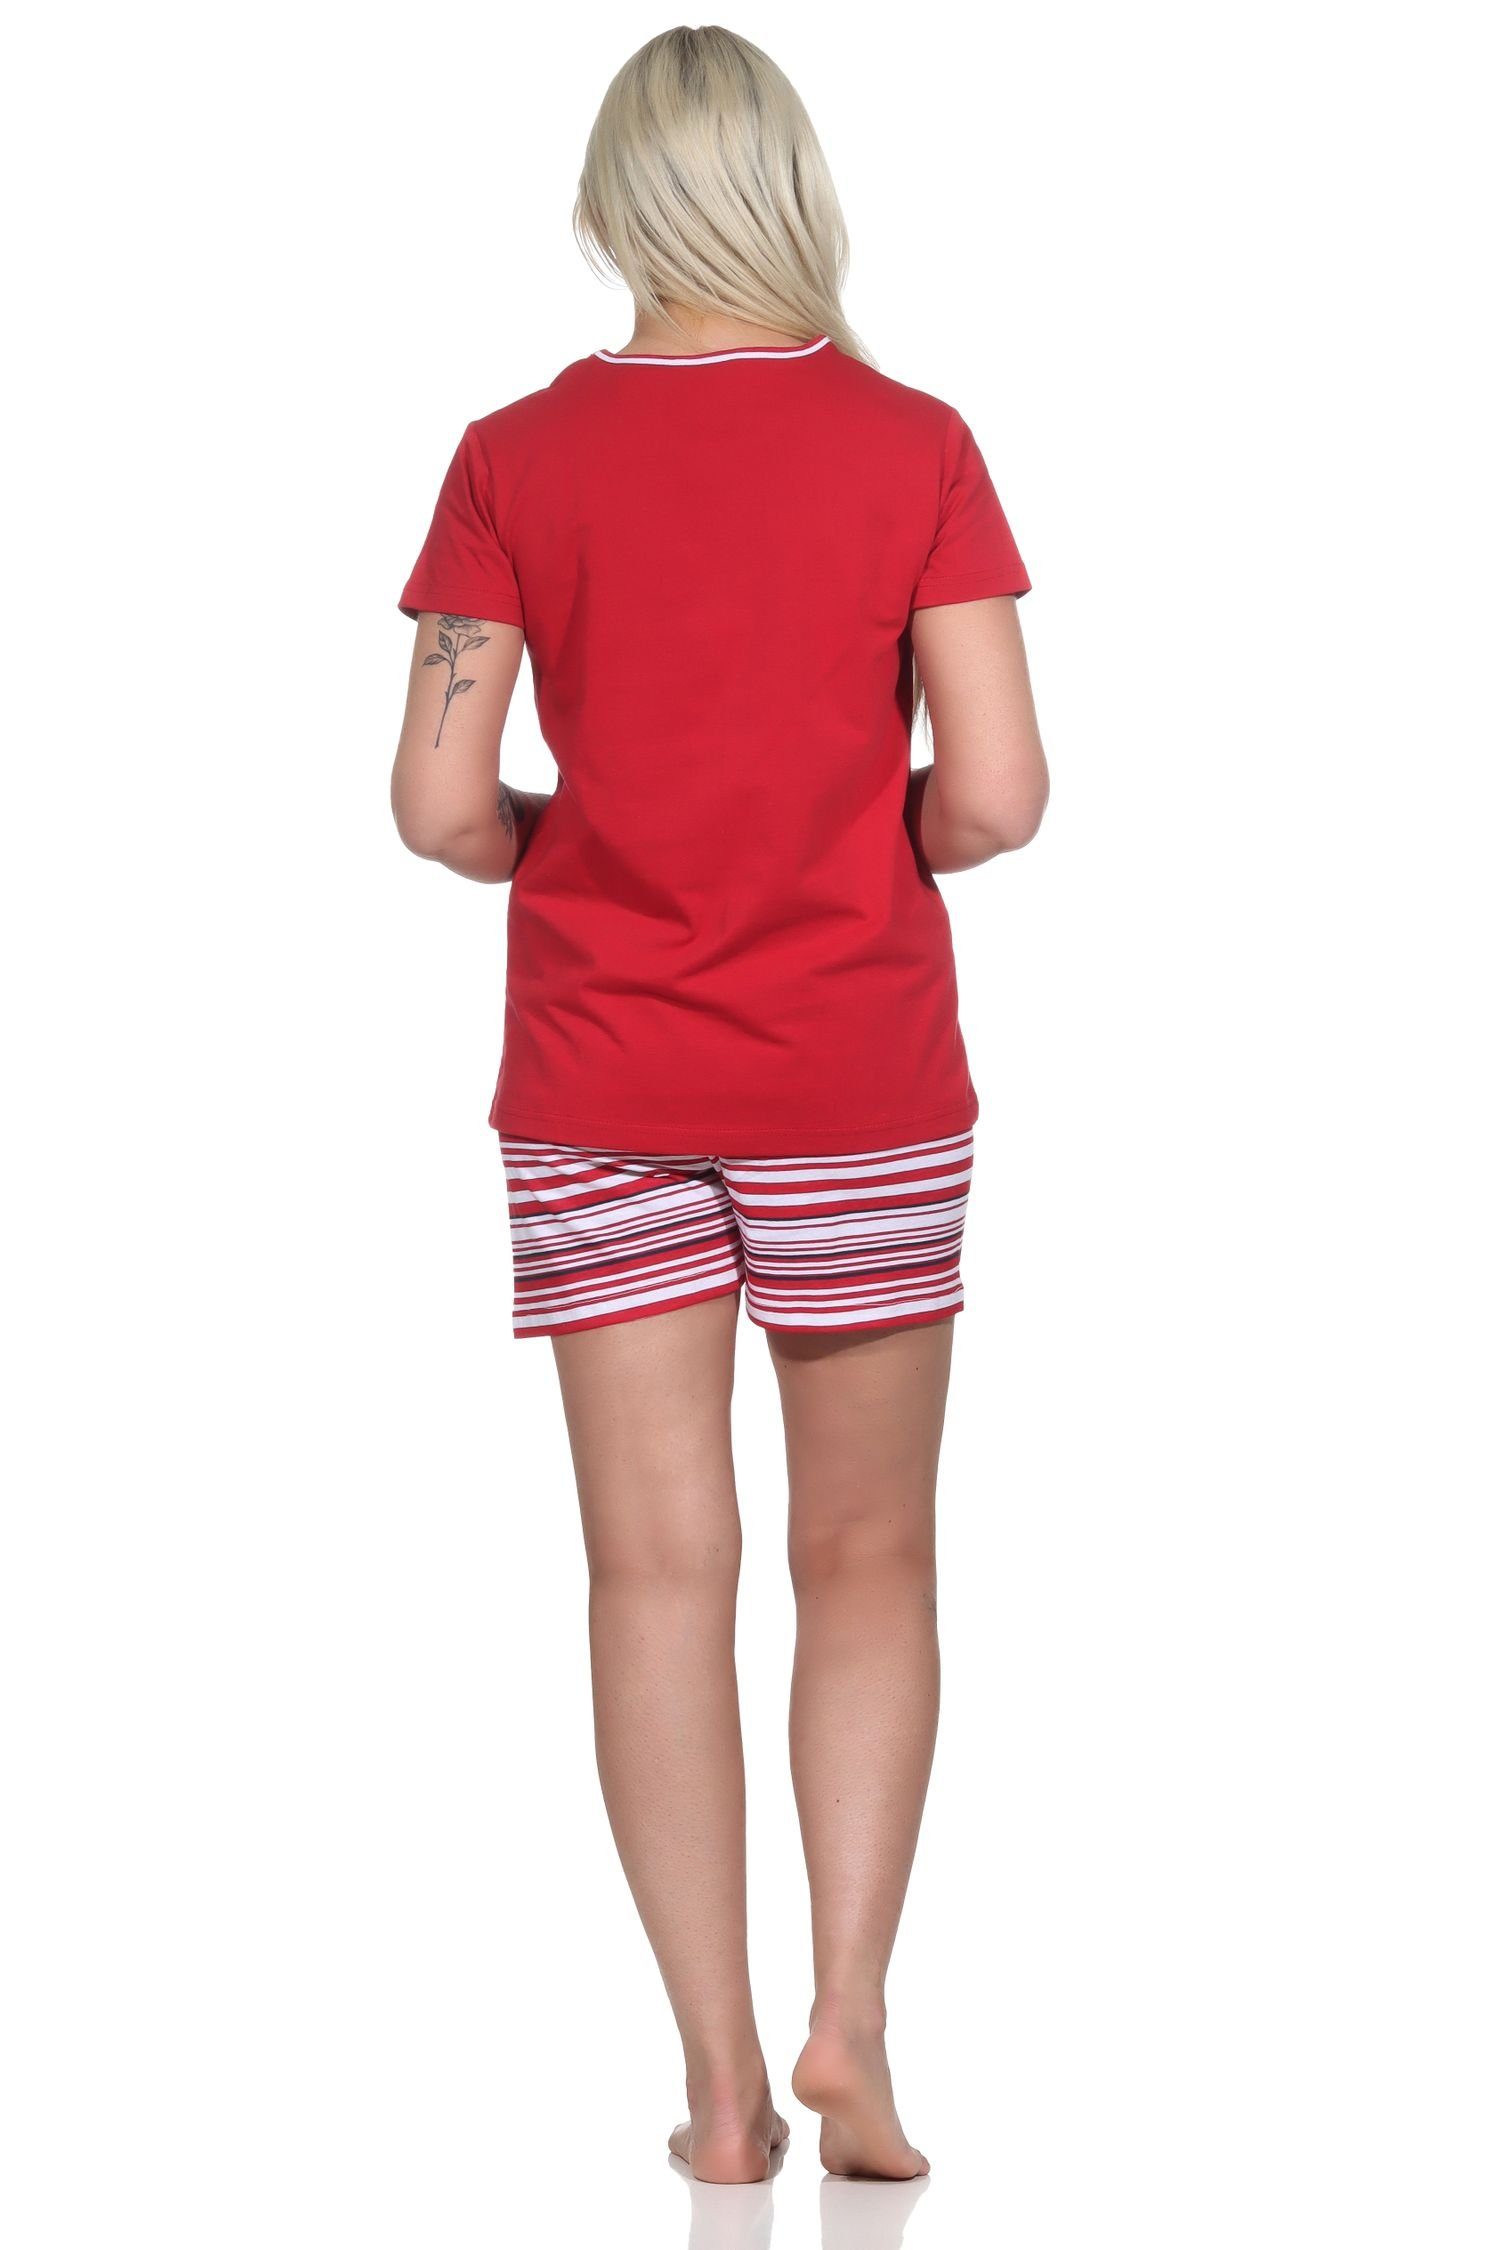 Normann rot Anker-Motiv Damen Pyjama Pyjama Shorty Shorts gestreiften und mit